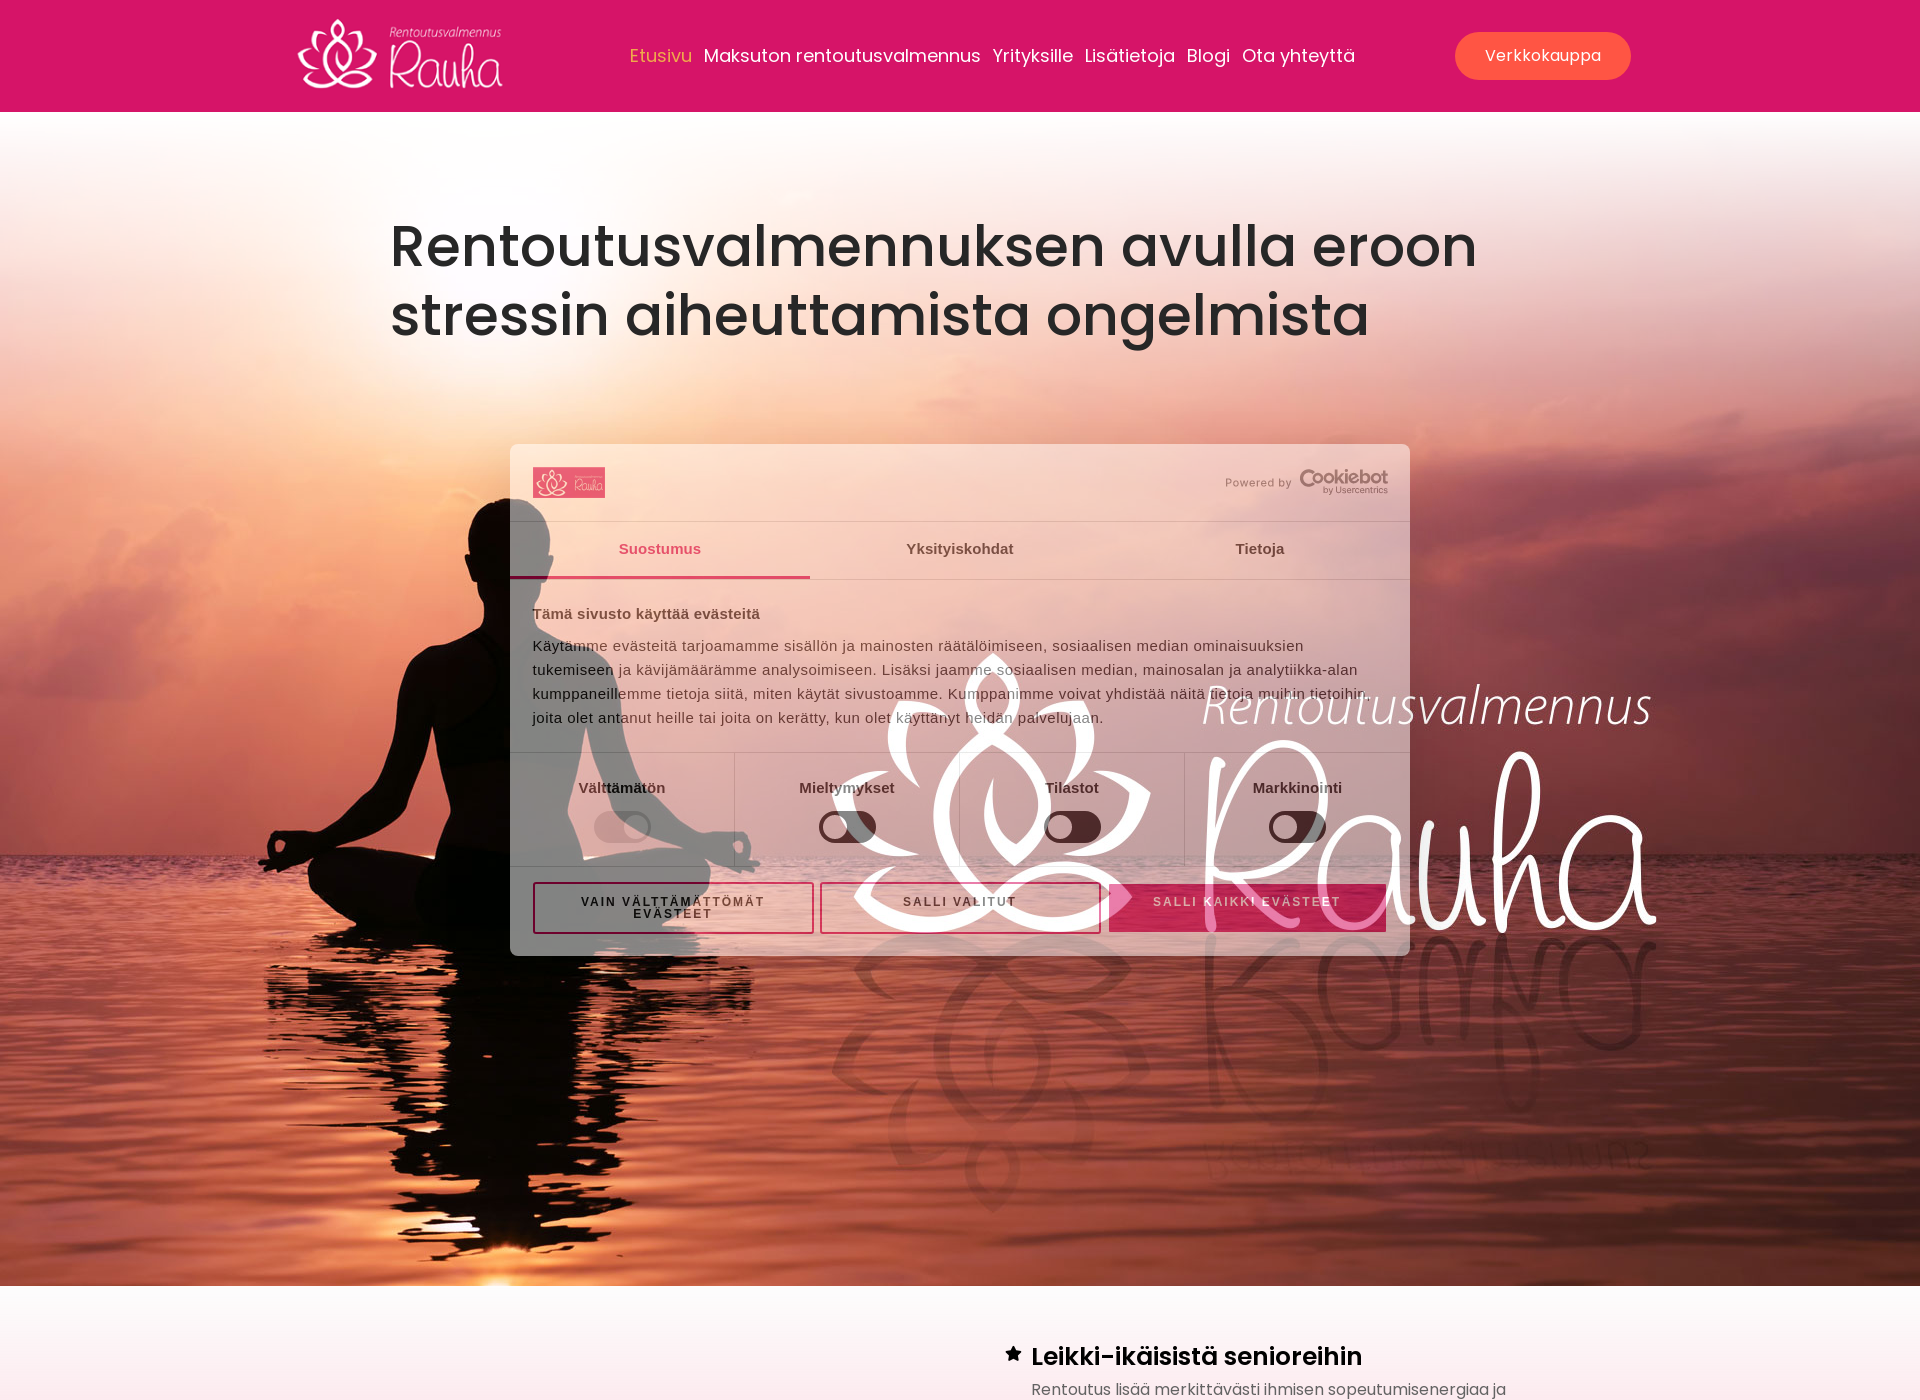 Näyttökuva rentoutusvalmennusrauha.fi